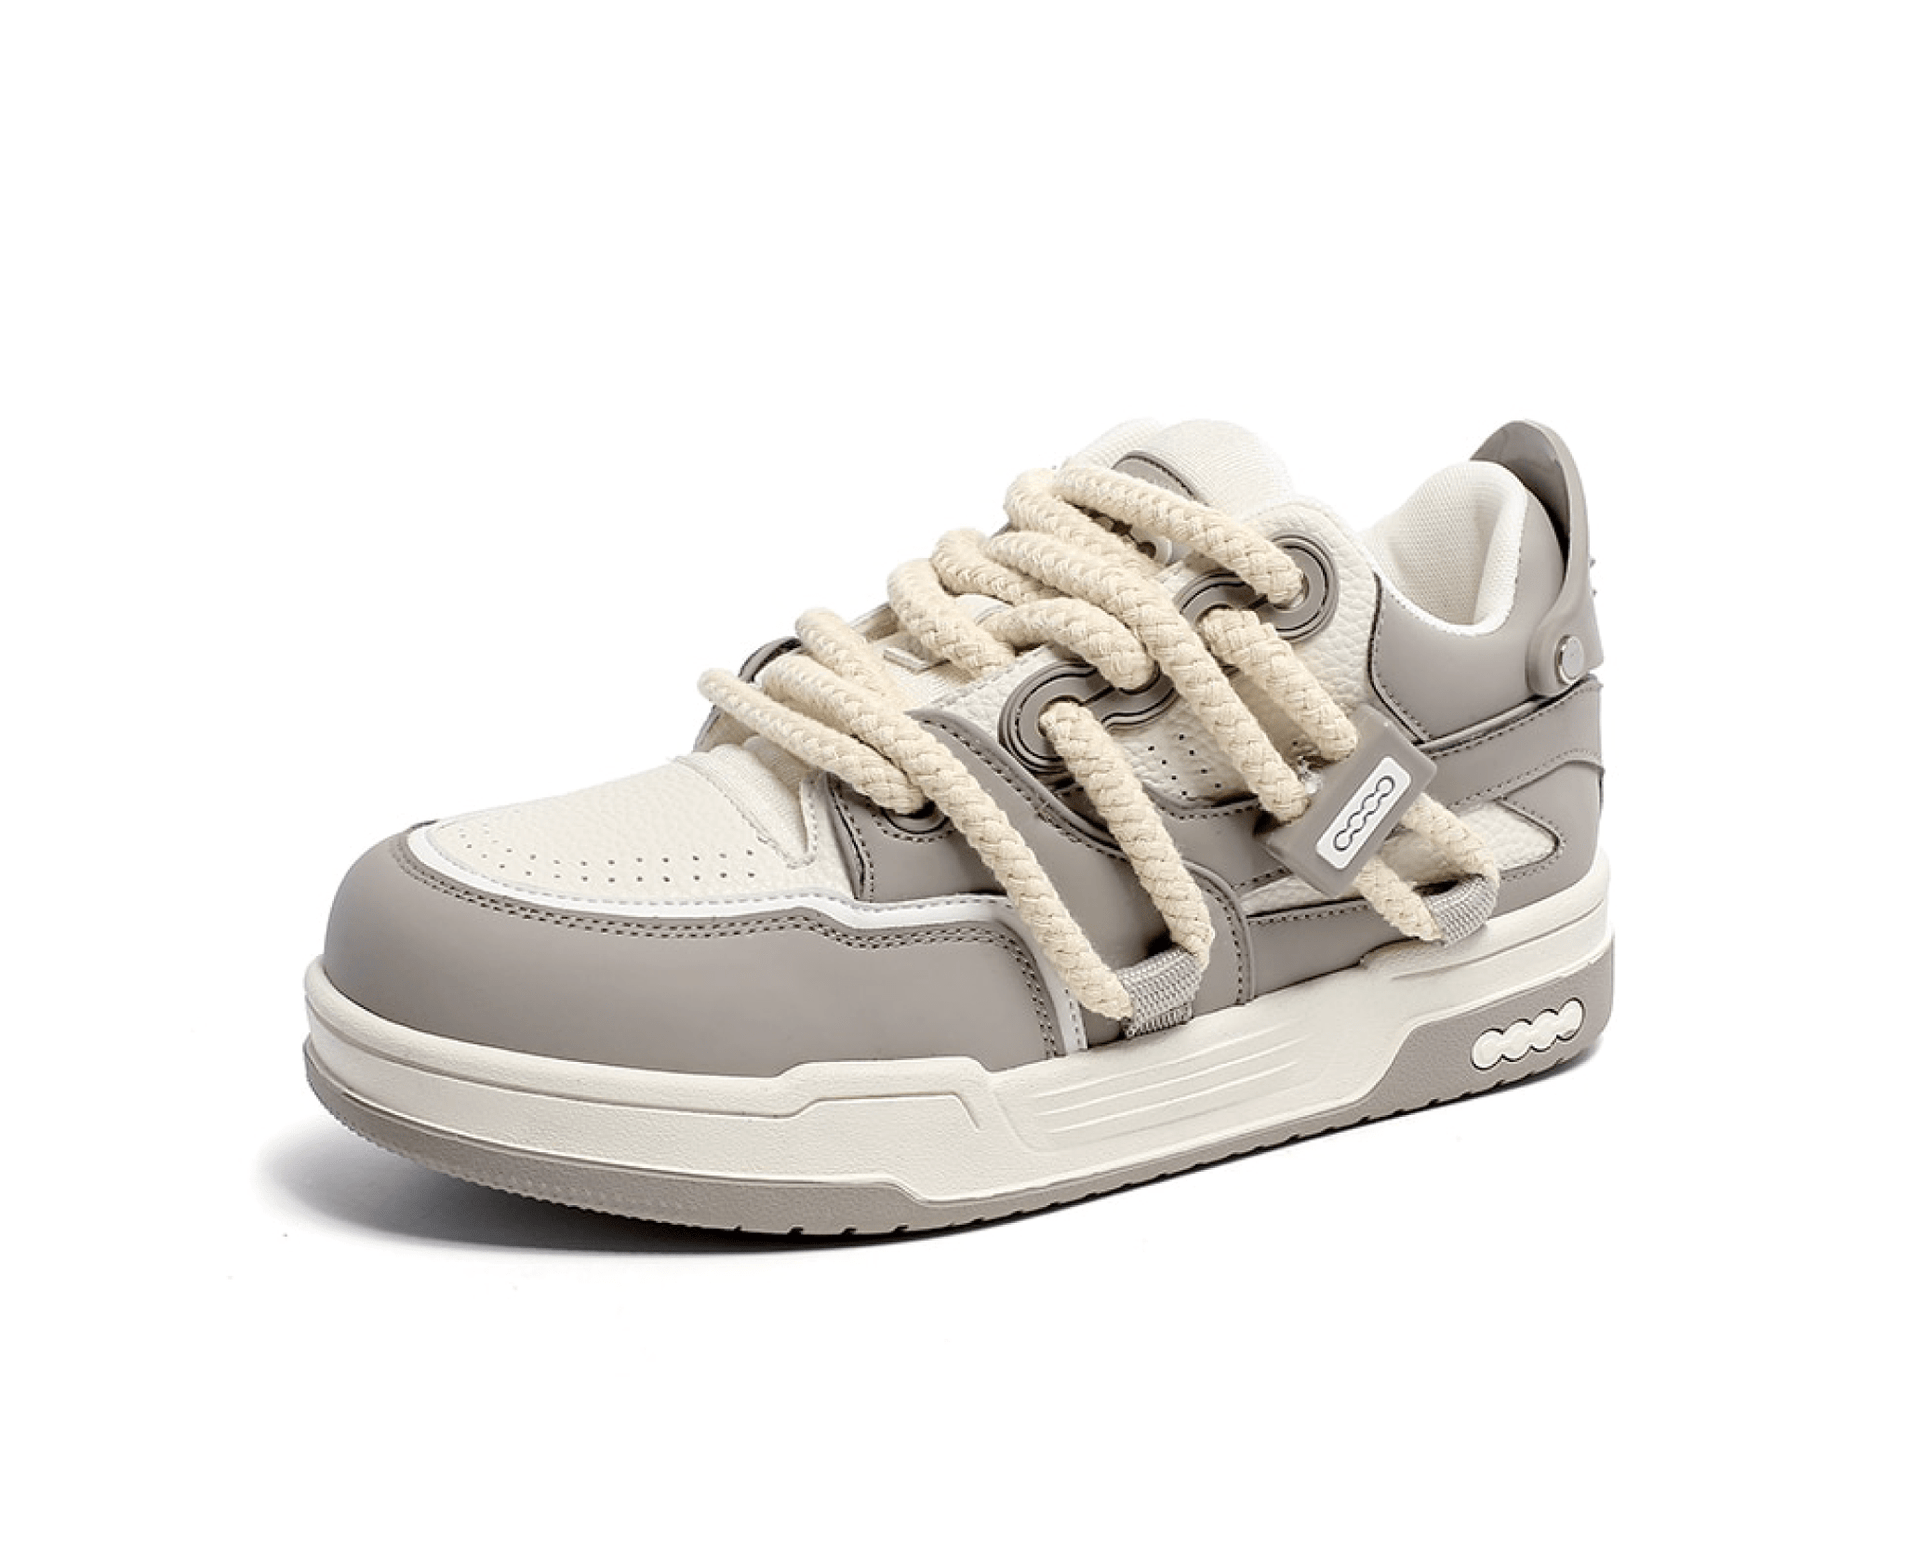 Phat Lace Sneakers - Cloud White/Fog Grey-streetwear-techwear